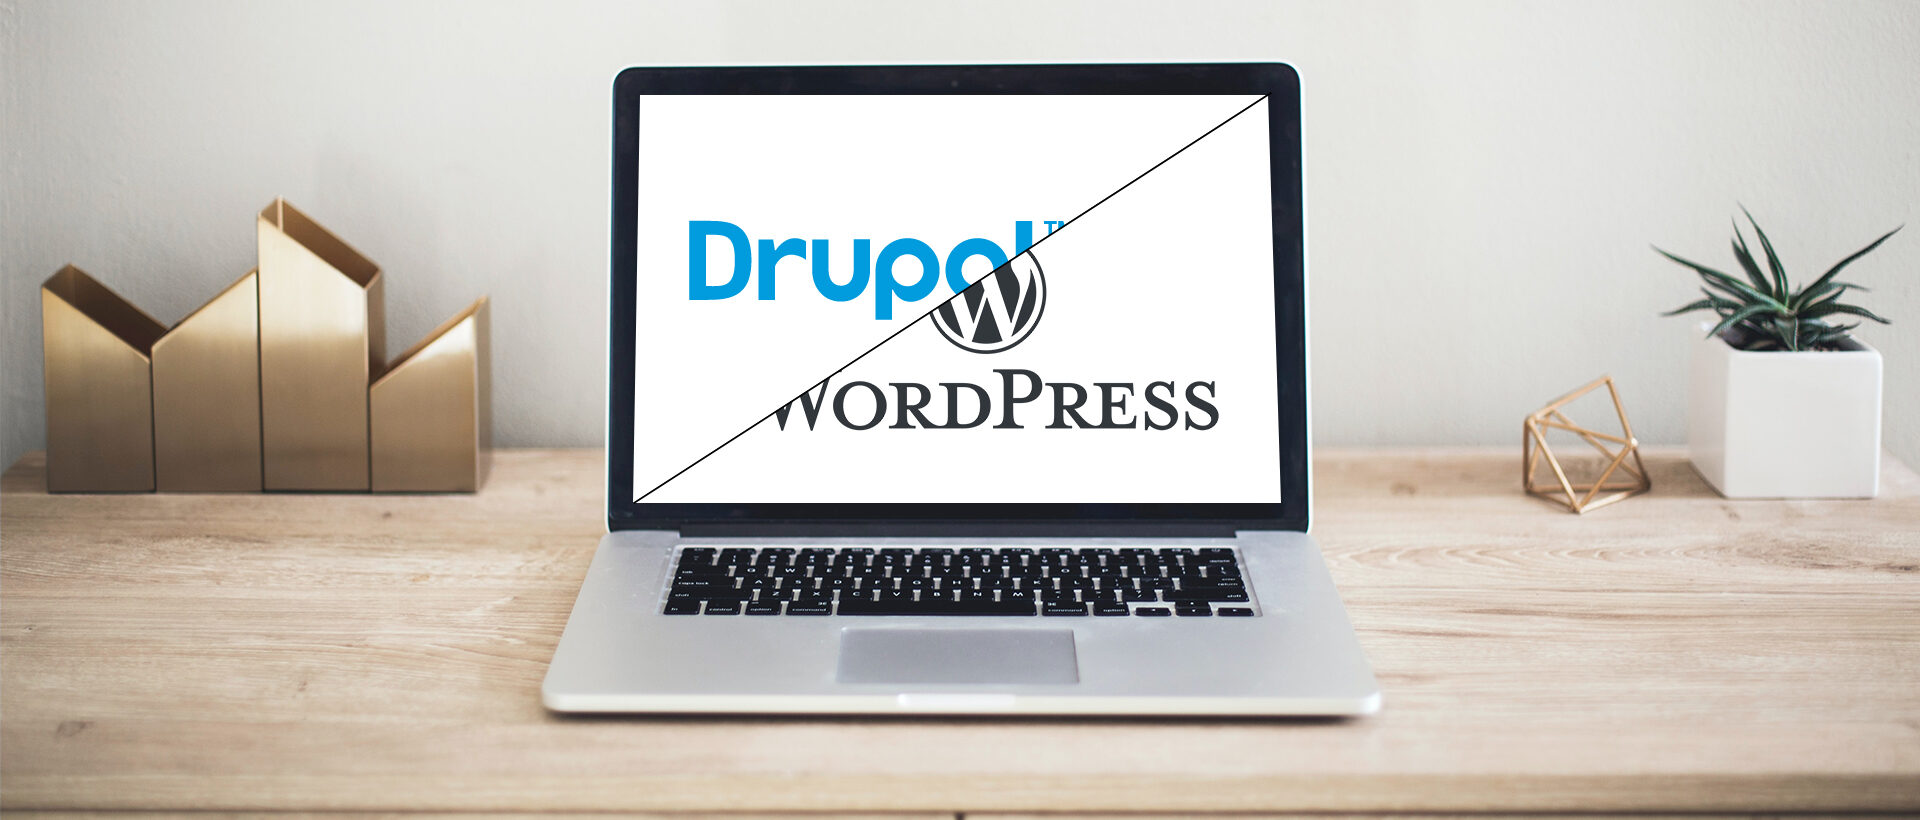 MacBook Pro mit WordPress und Drupal Logo auf dem Bildschirm